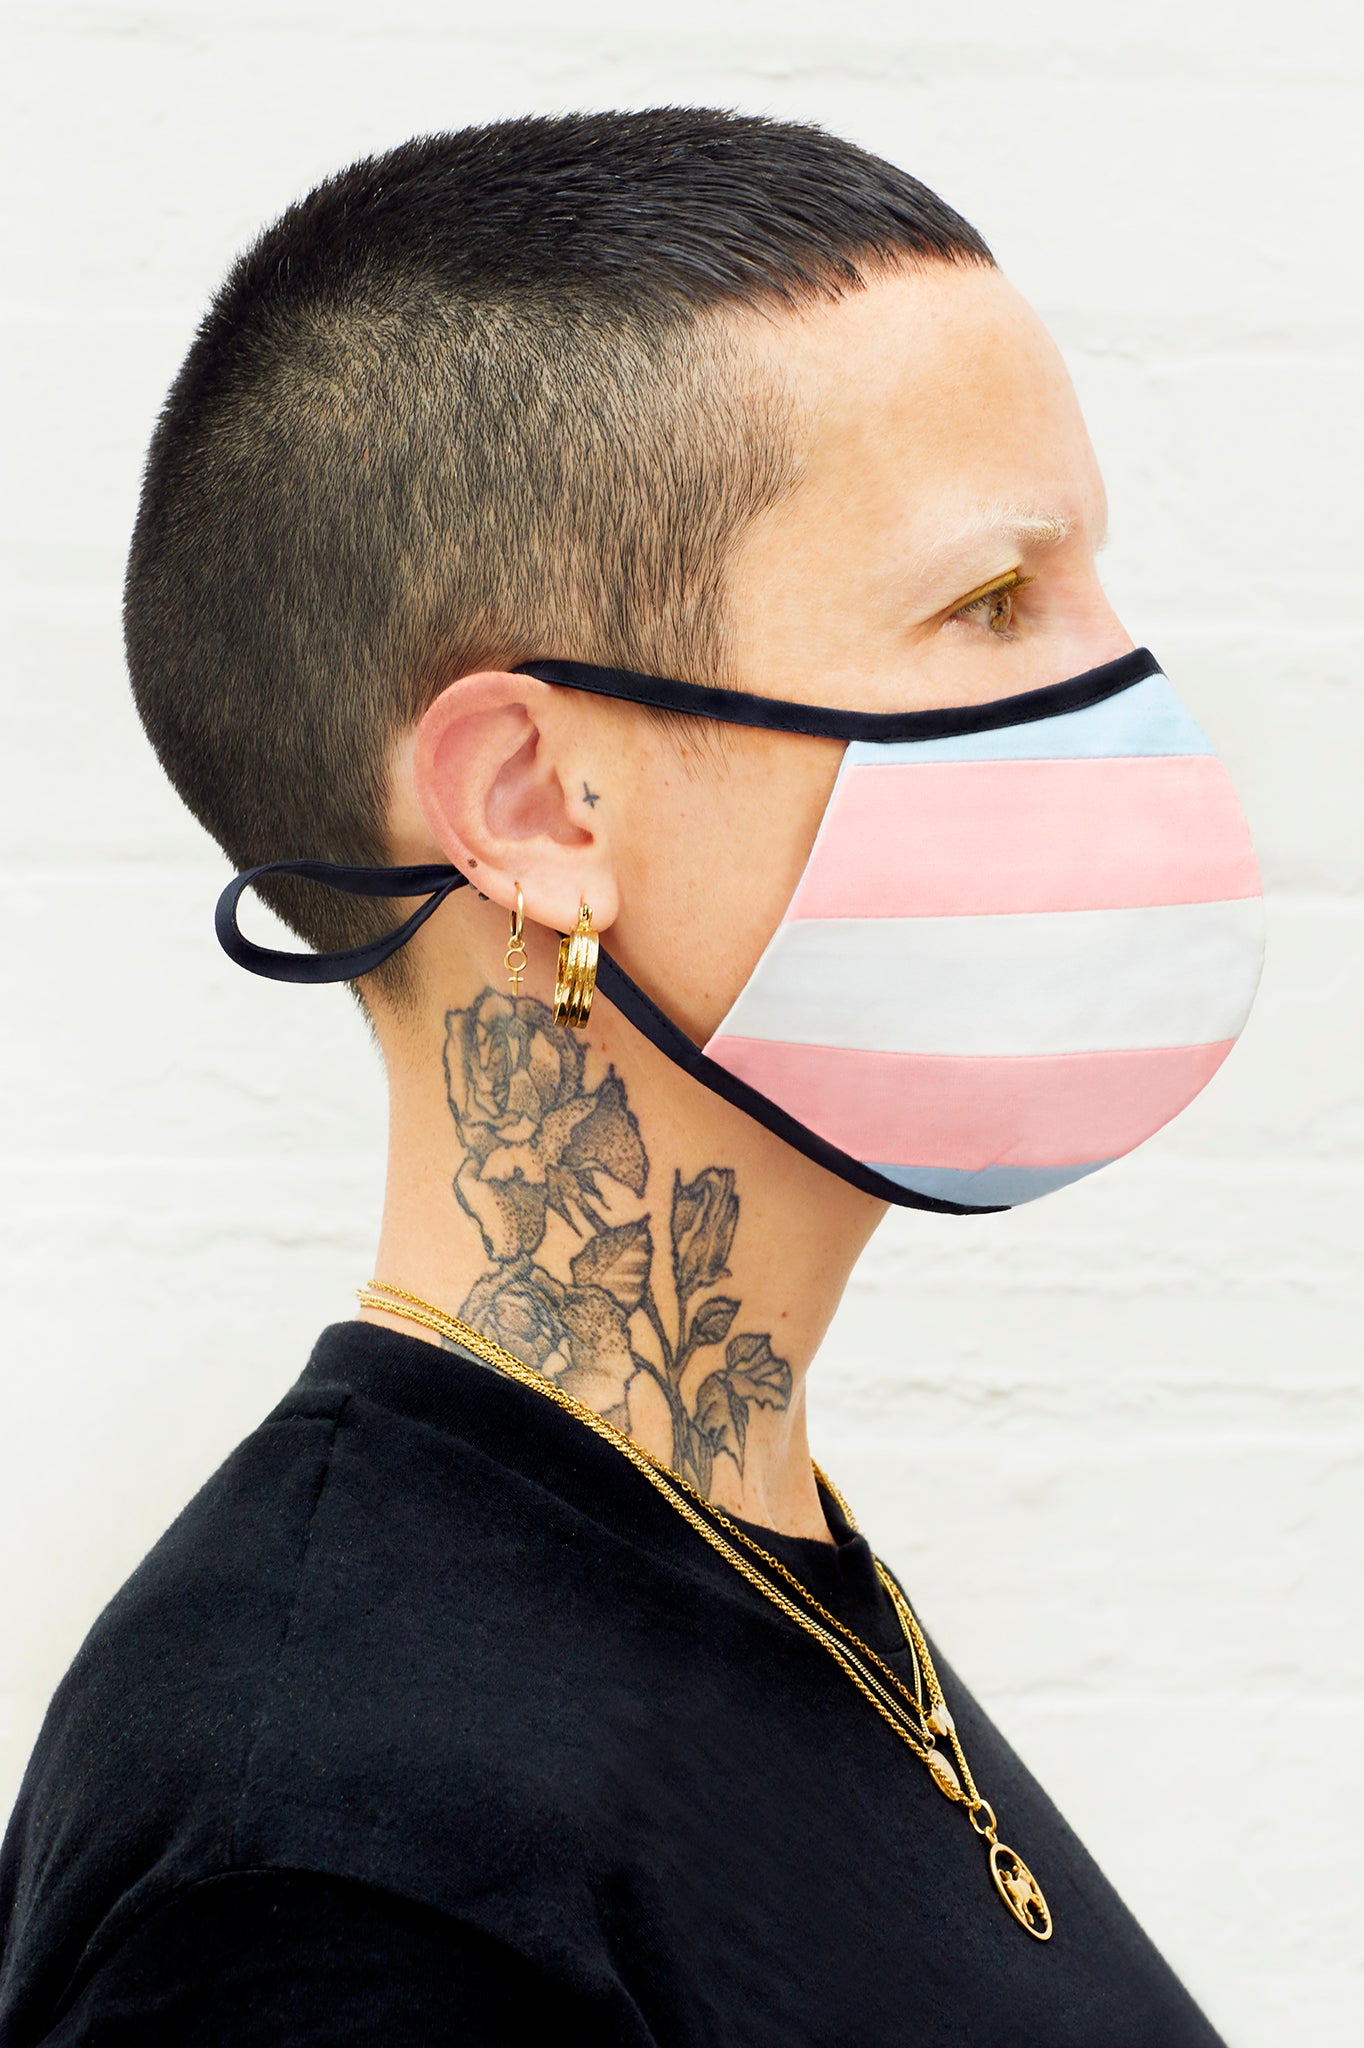 Transgender Flag Mask